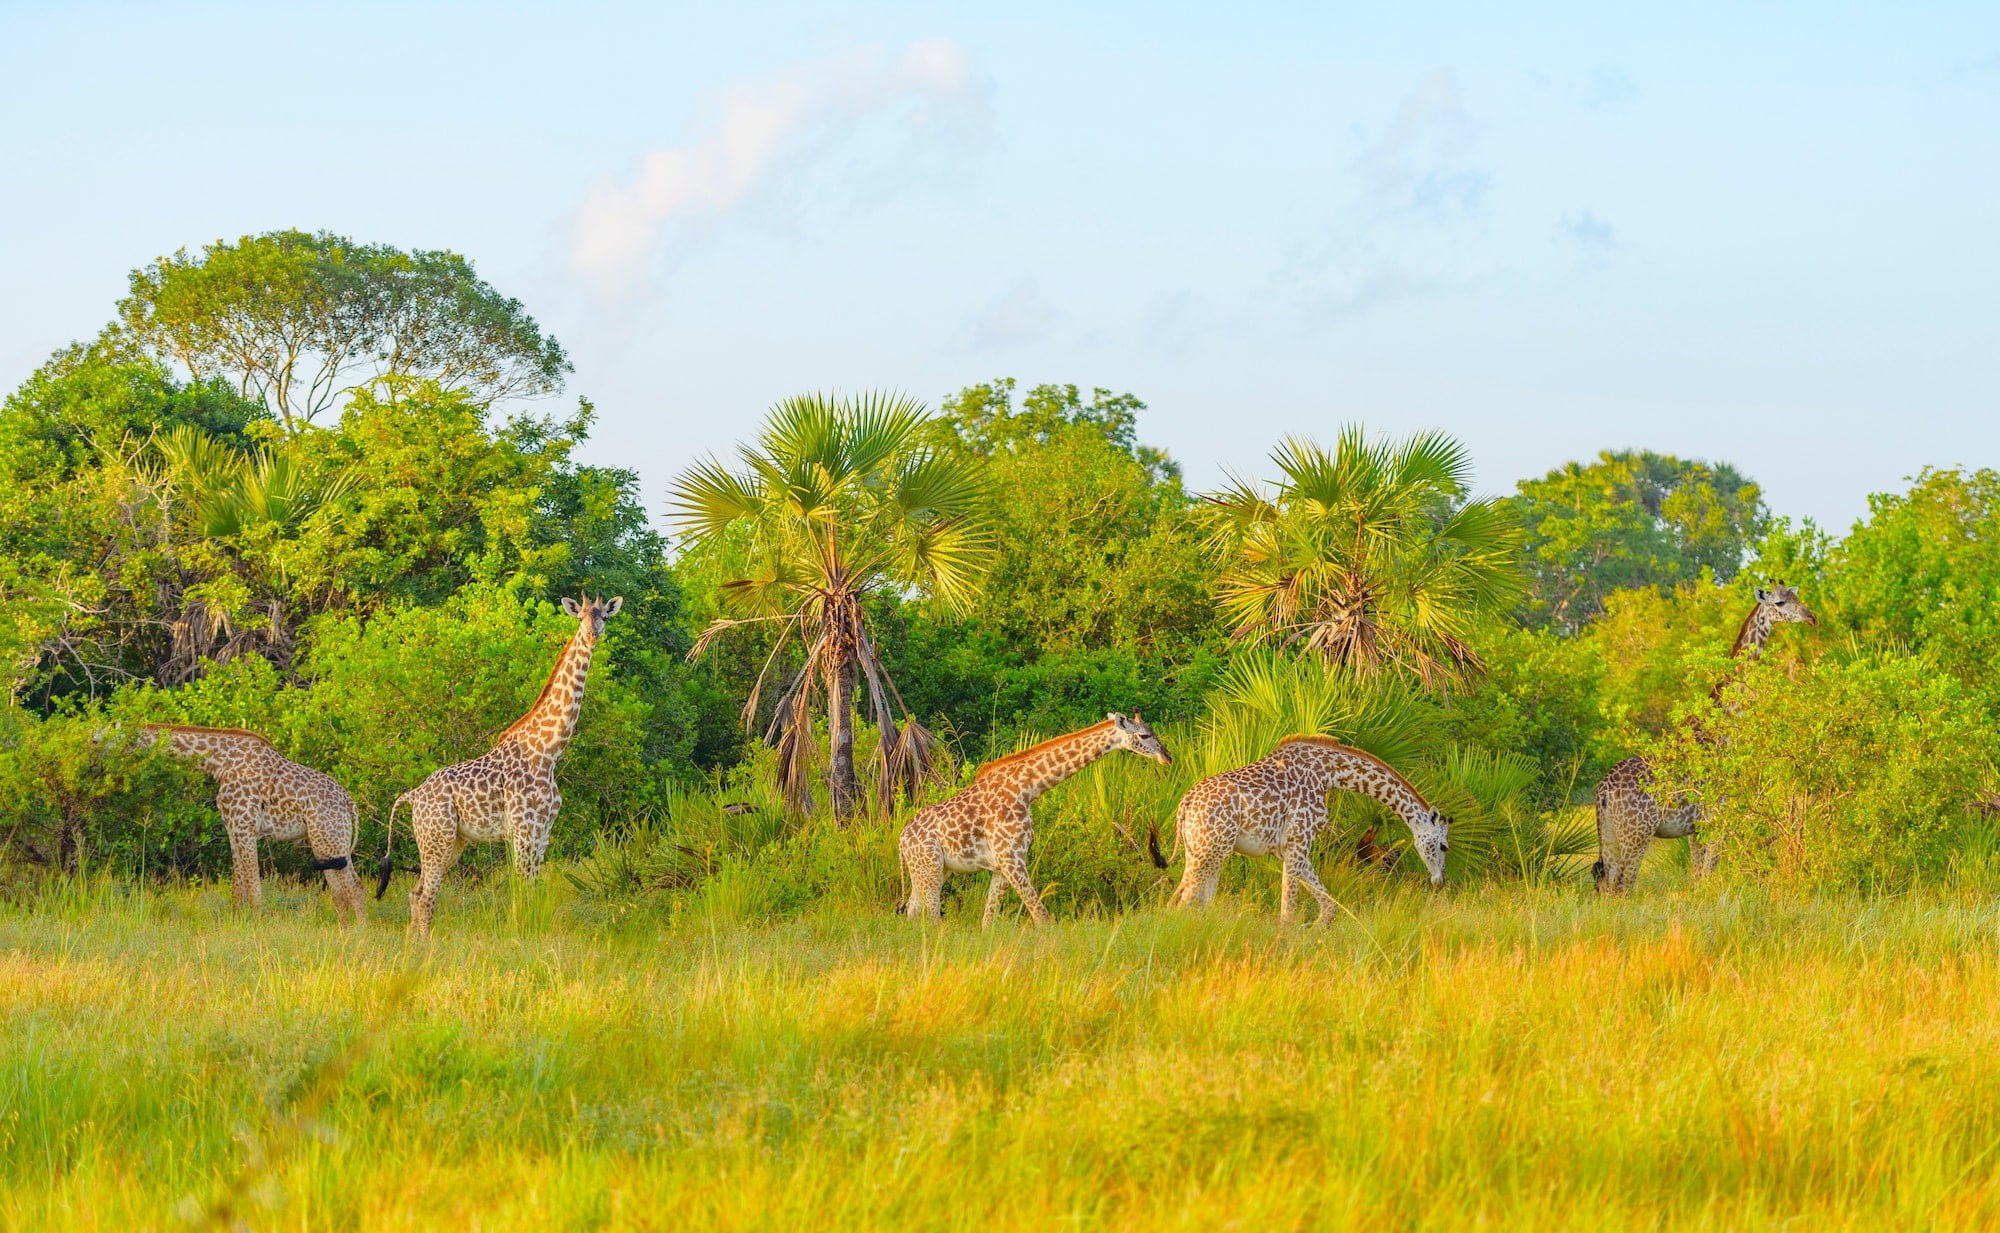 Giraffes in Safari park in Uganda